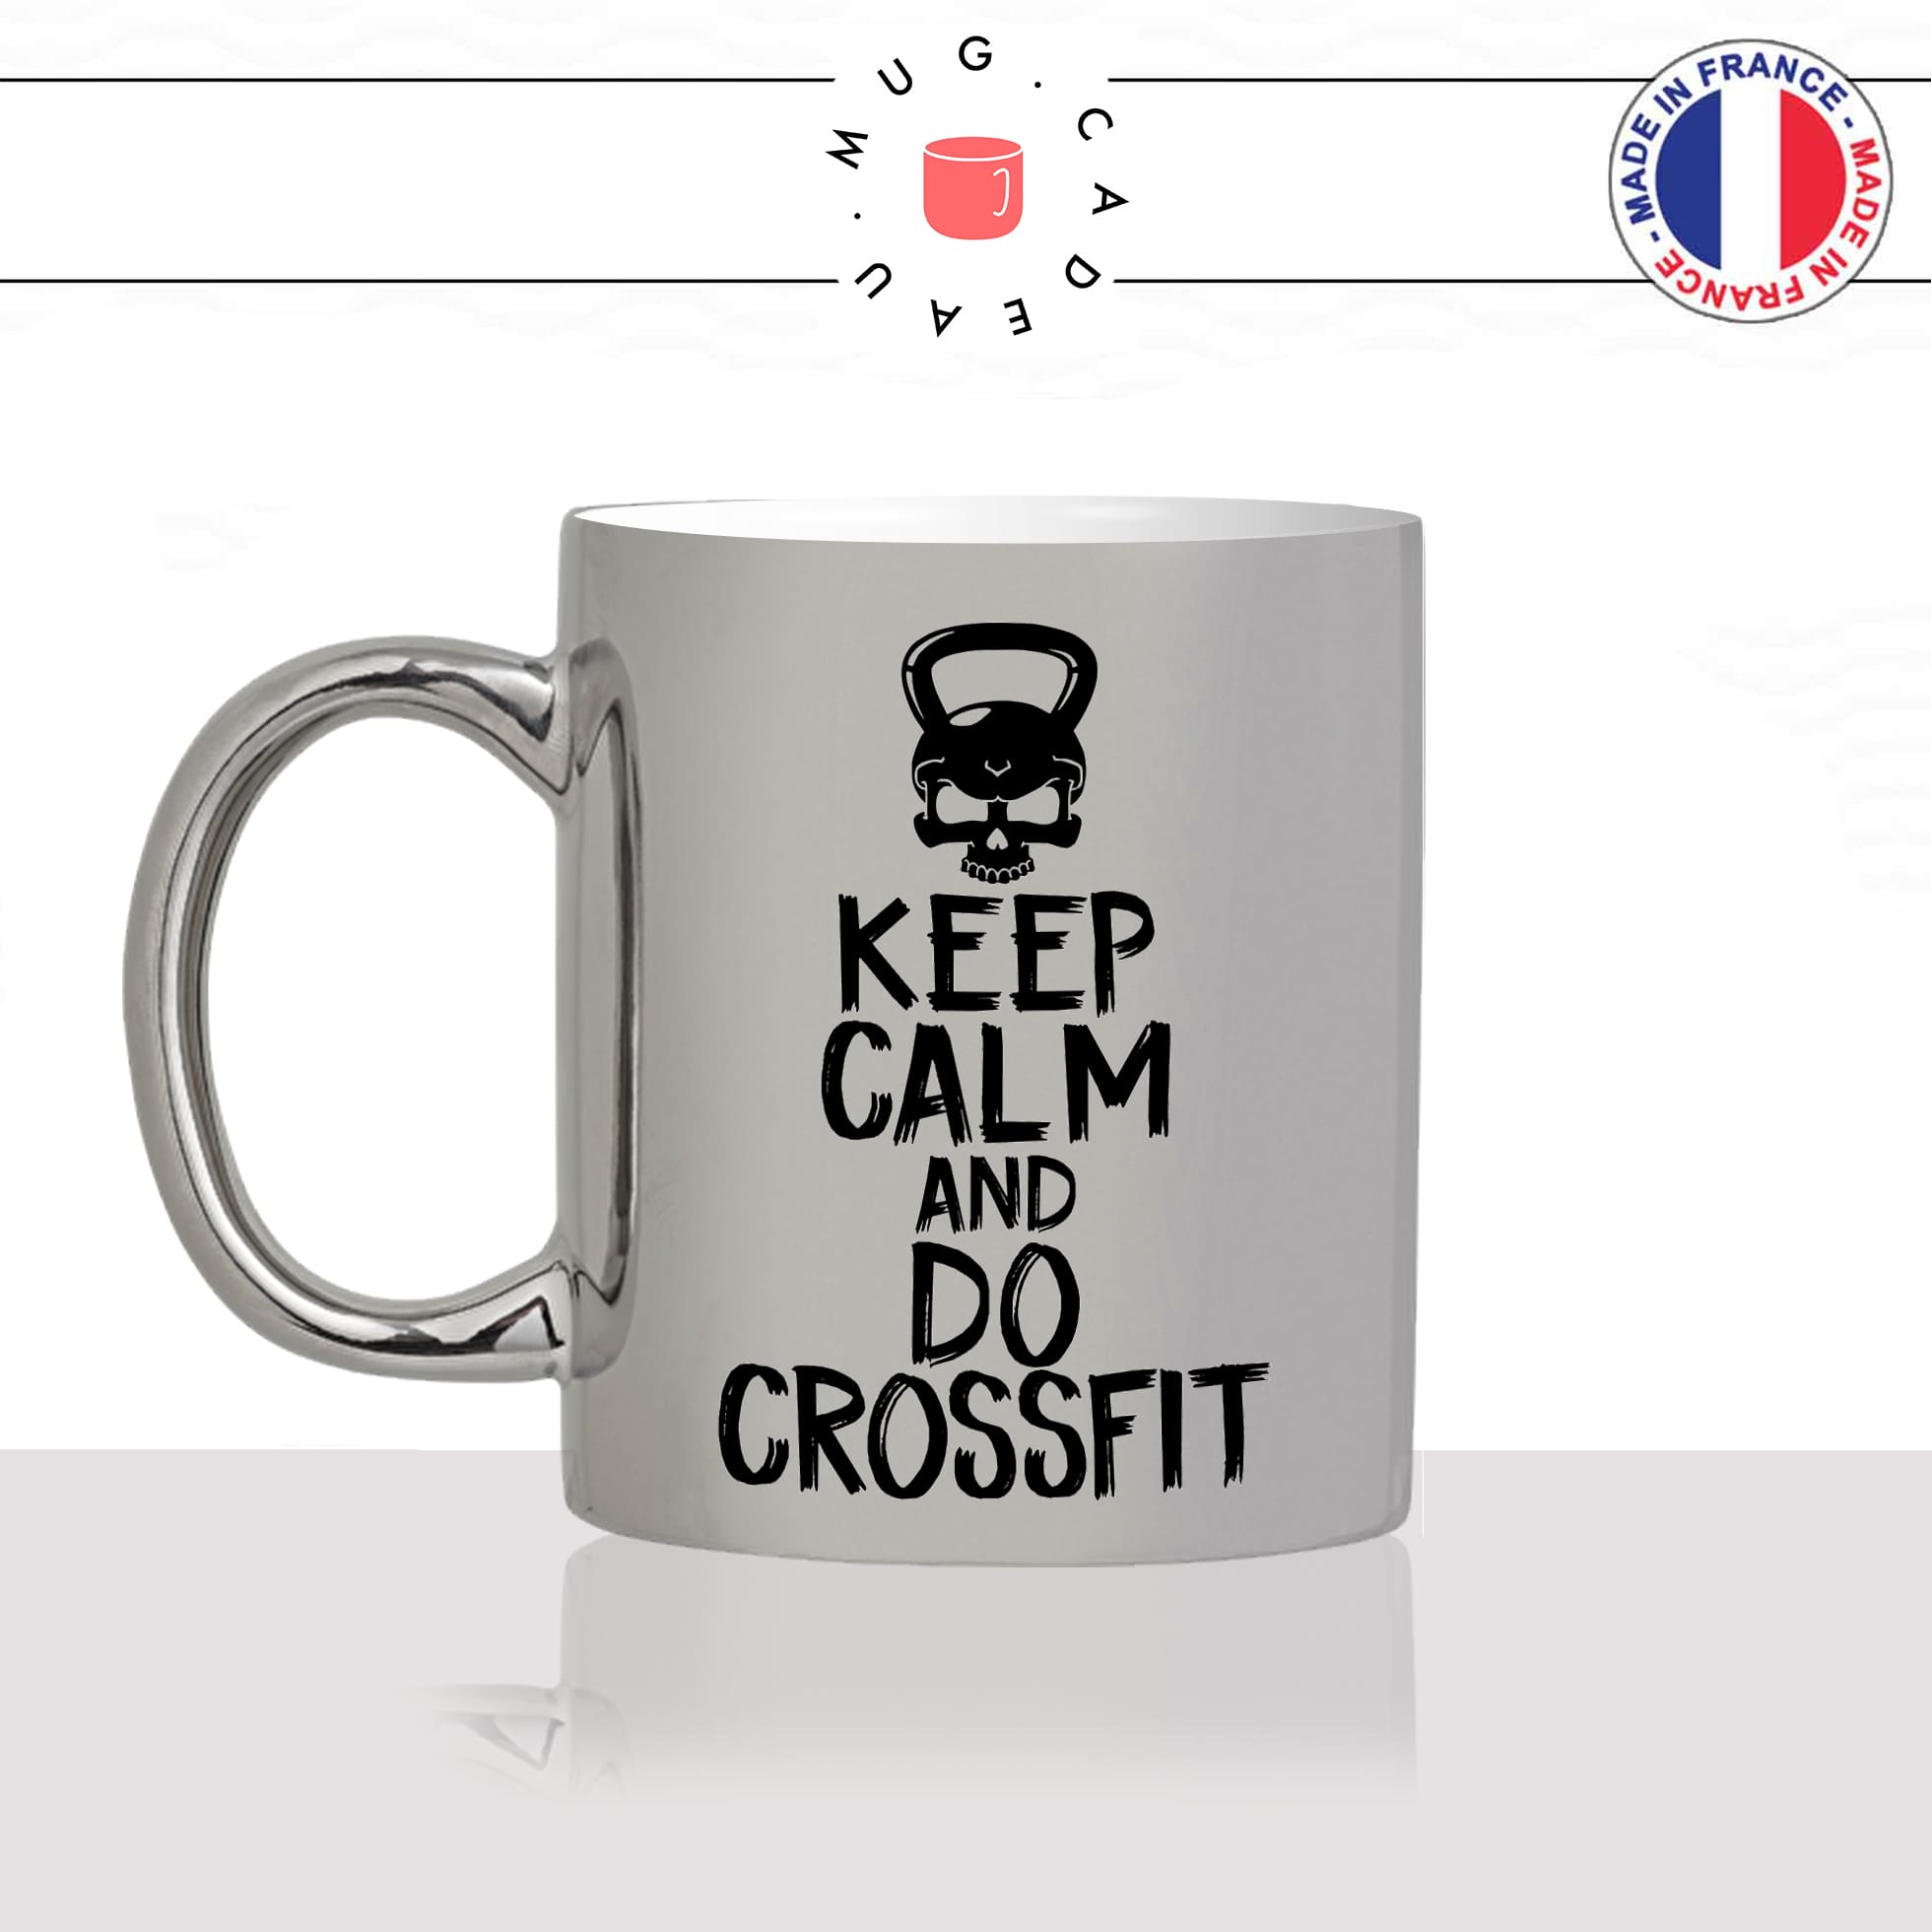 mug-tasse-argent-argenté-silver-keep-calm-and-do-crossfit-sport-cross-training-kettlebell-musculation-idée-cadeau-fun-cool-café-thé-original